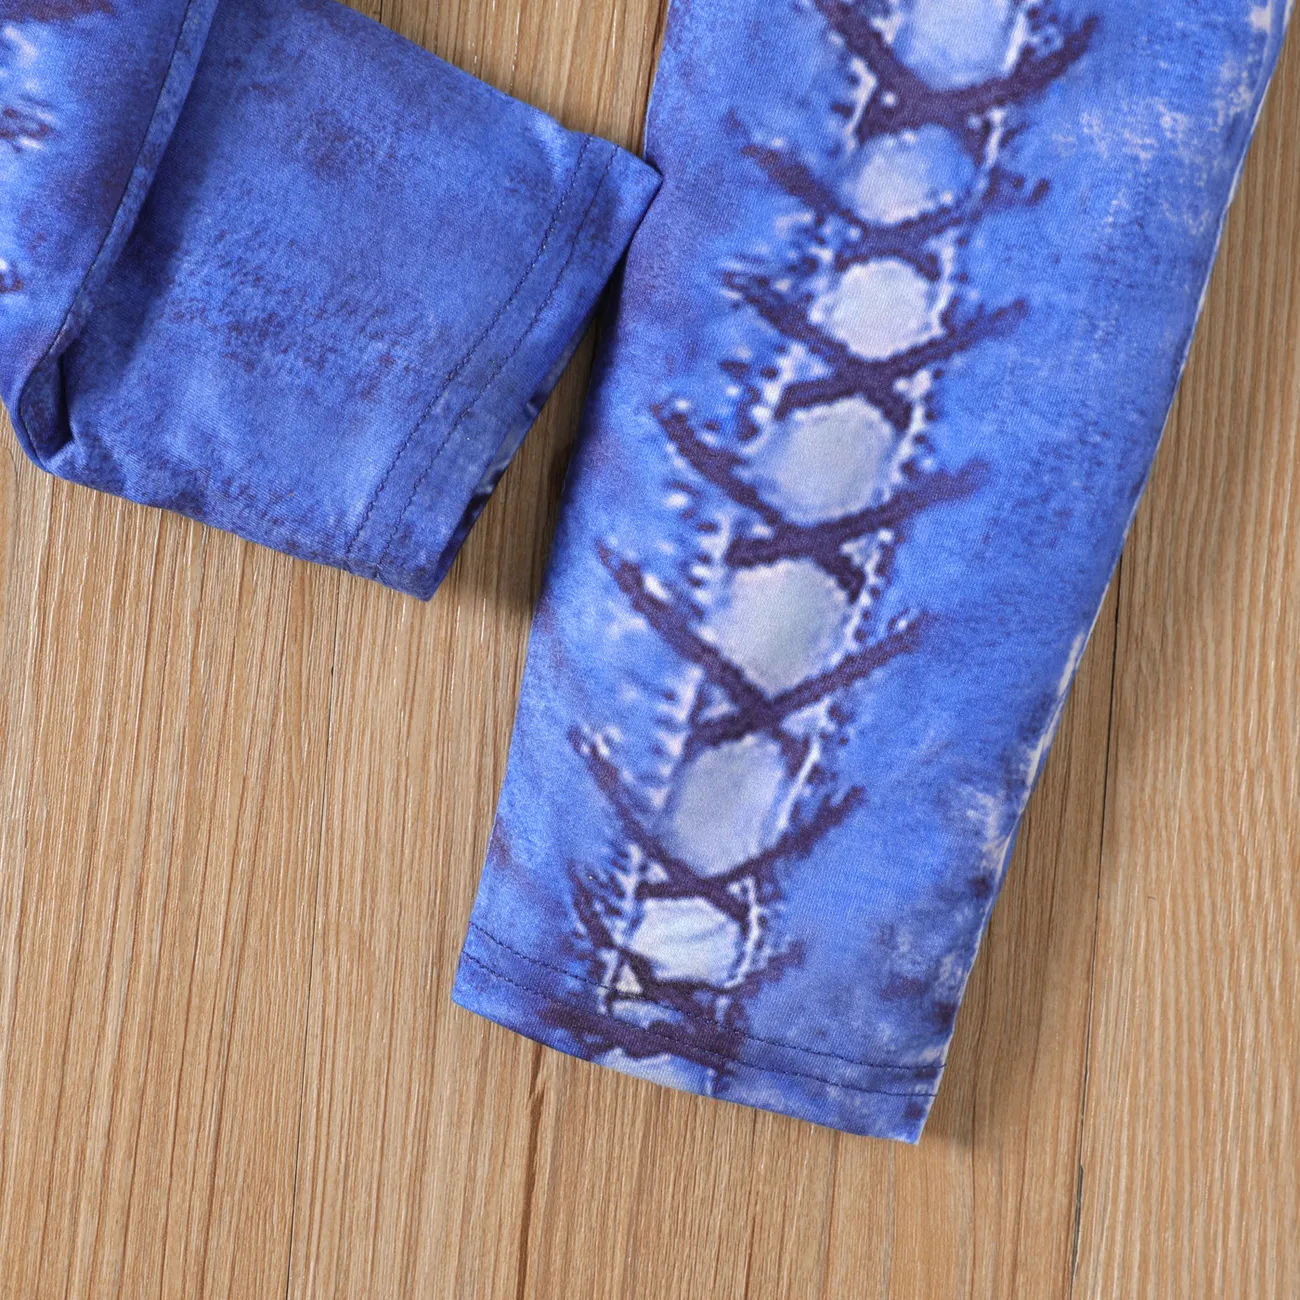 Leggings de calças skinny elásticas estampadas com padrão de renda menina (não leggings jeans) azul denim big image 1